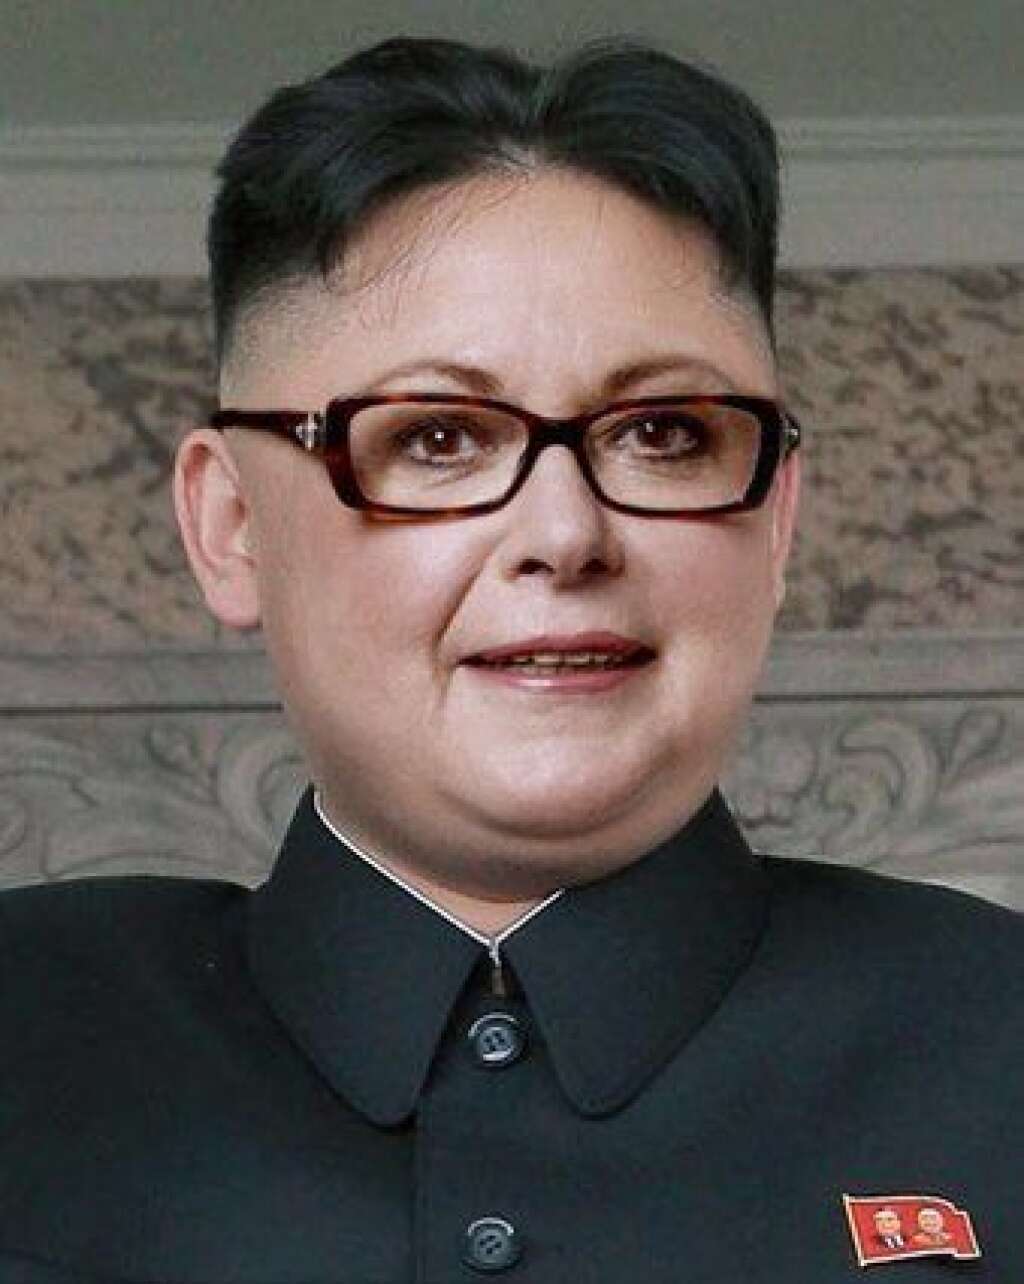 Kim-Jong-Boutin - "Comme le dictateur nord-coréen, Boutin a brandi la menace de 'bombe atomique'. Pendant le dossier du mariage pour tous, Mme Boutin a eu le droit à son lot de #CroisonsLes, celui-ci étant mon préféré. Je l'ai d'ailleurs vu sur une pancarte pendant les manifs pro-mariage pour tous à la télé".